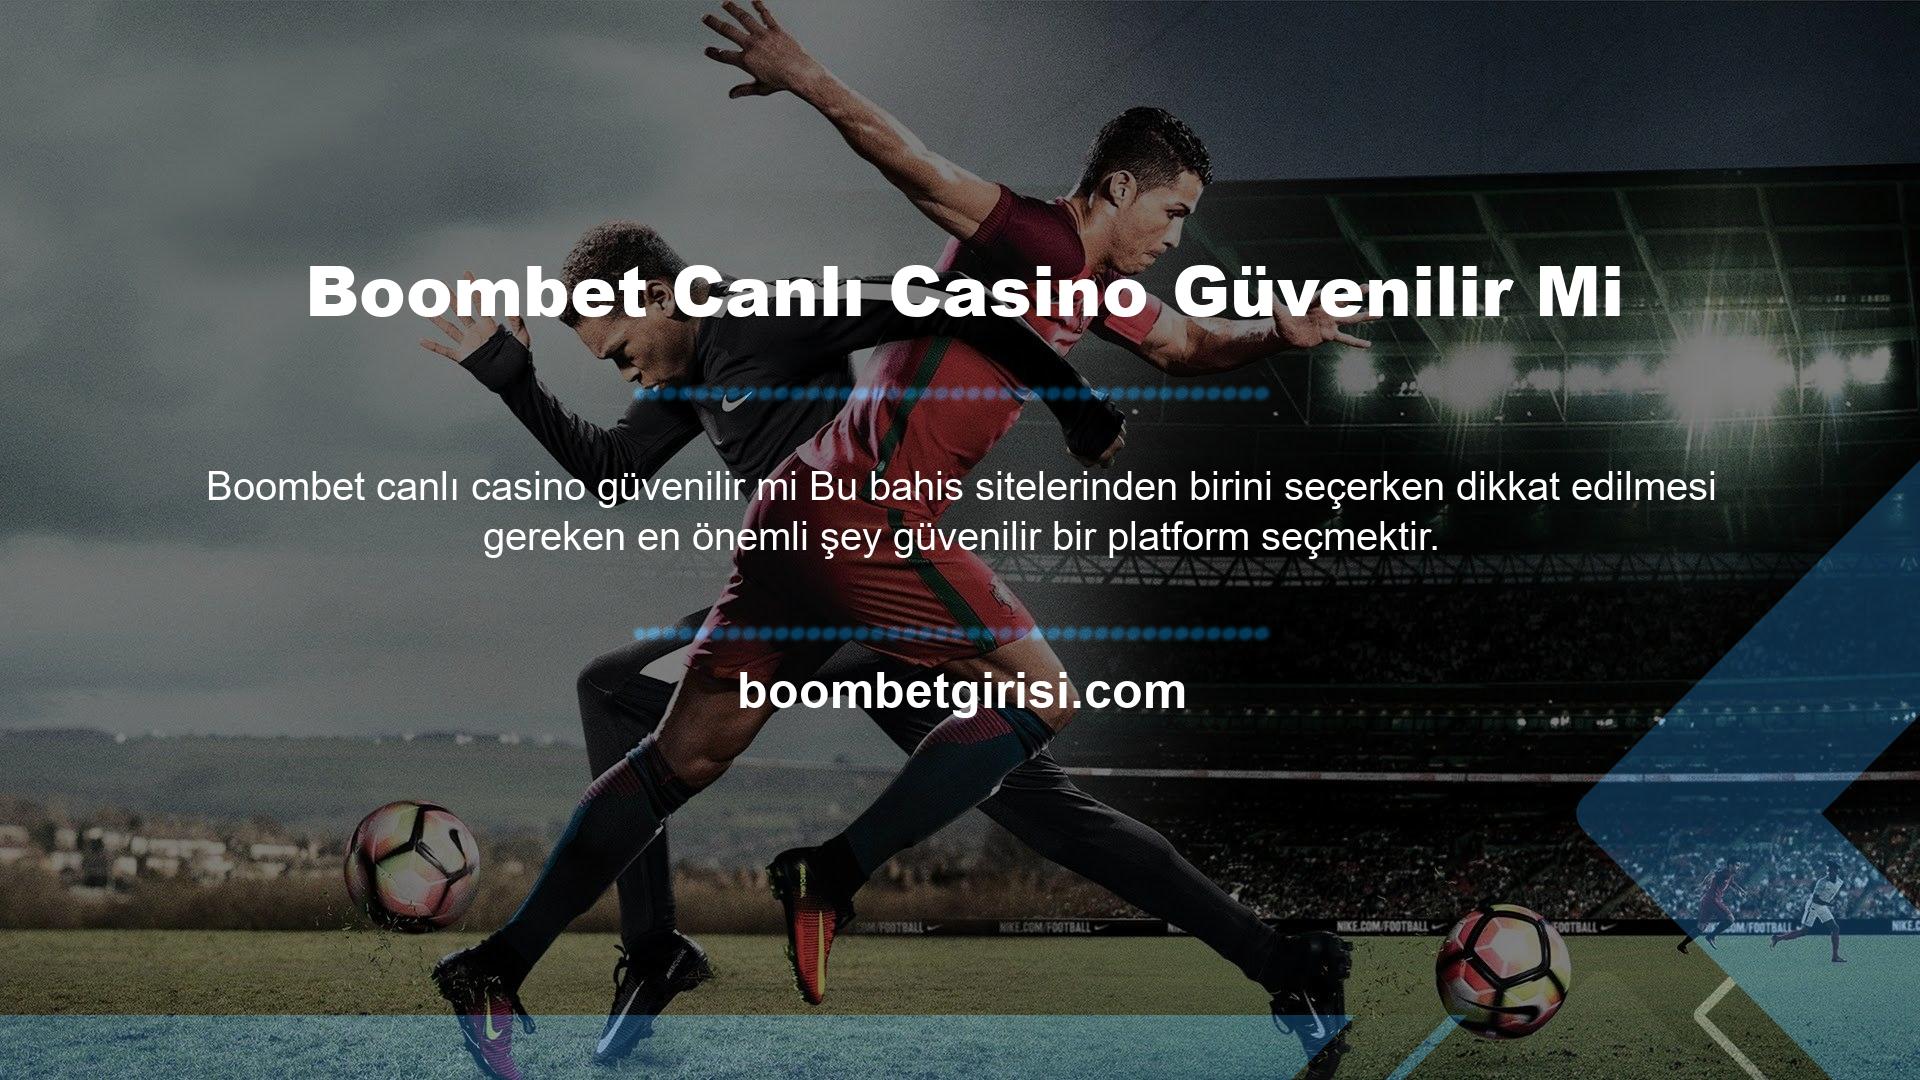 Boombet Canlı Casino Güvenilir mi Konu canlı casinolar olduğunda Boombet web sitesi her zaman çok güvenilir bir hizmet olmuştur